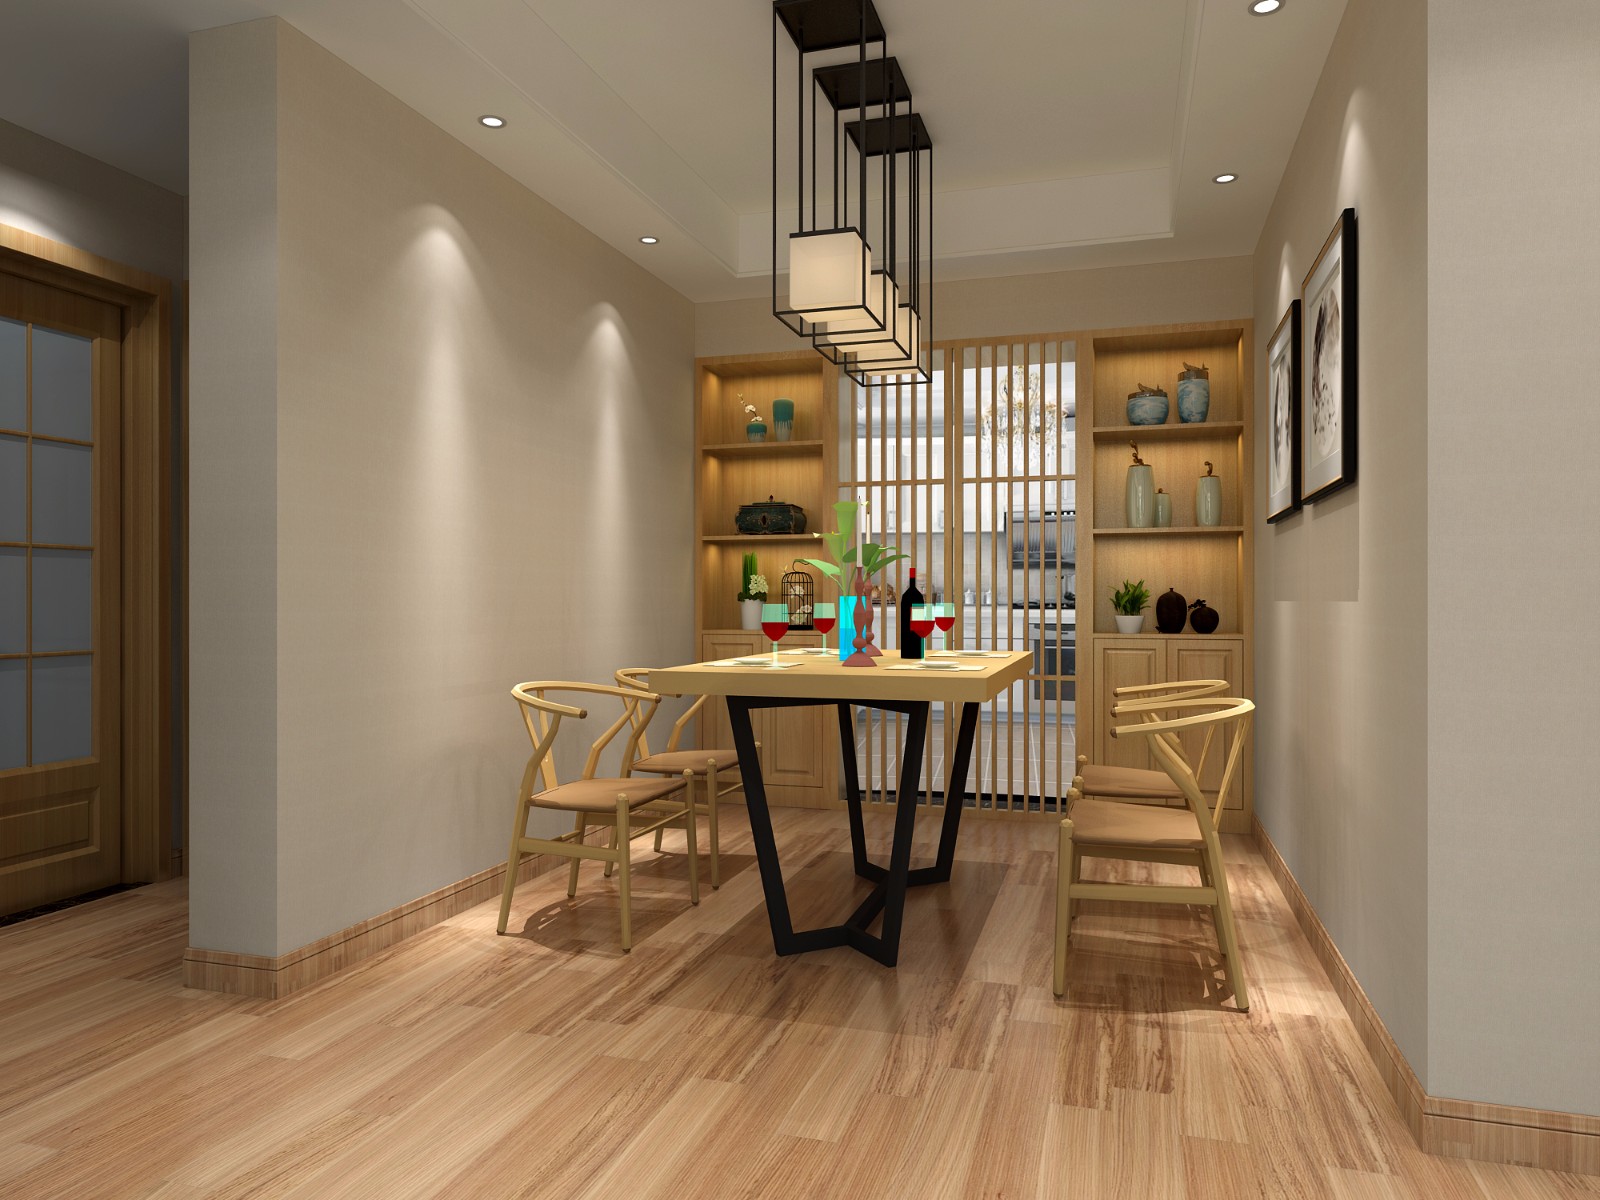 日式客厅餐厅 - 效果图交流区-建E室内设计网